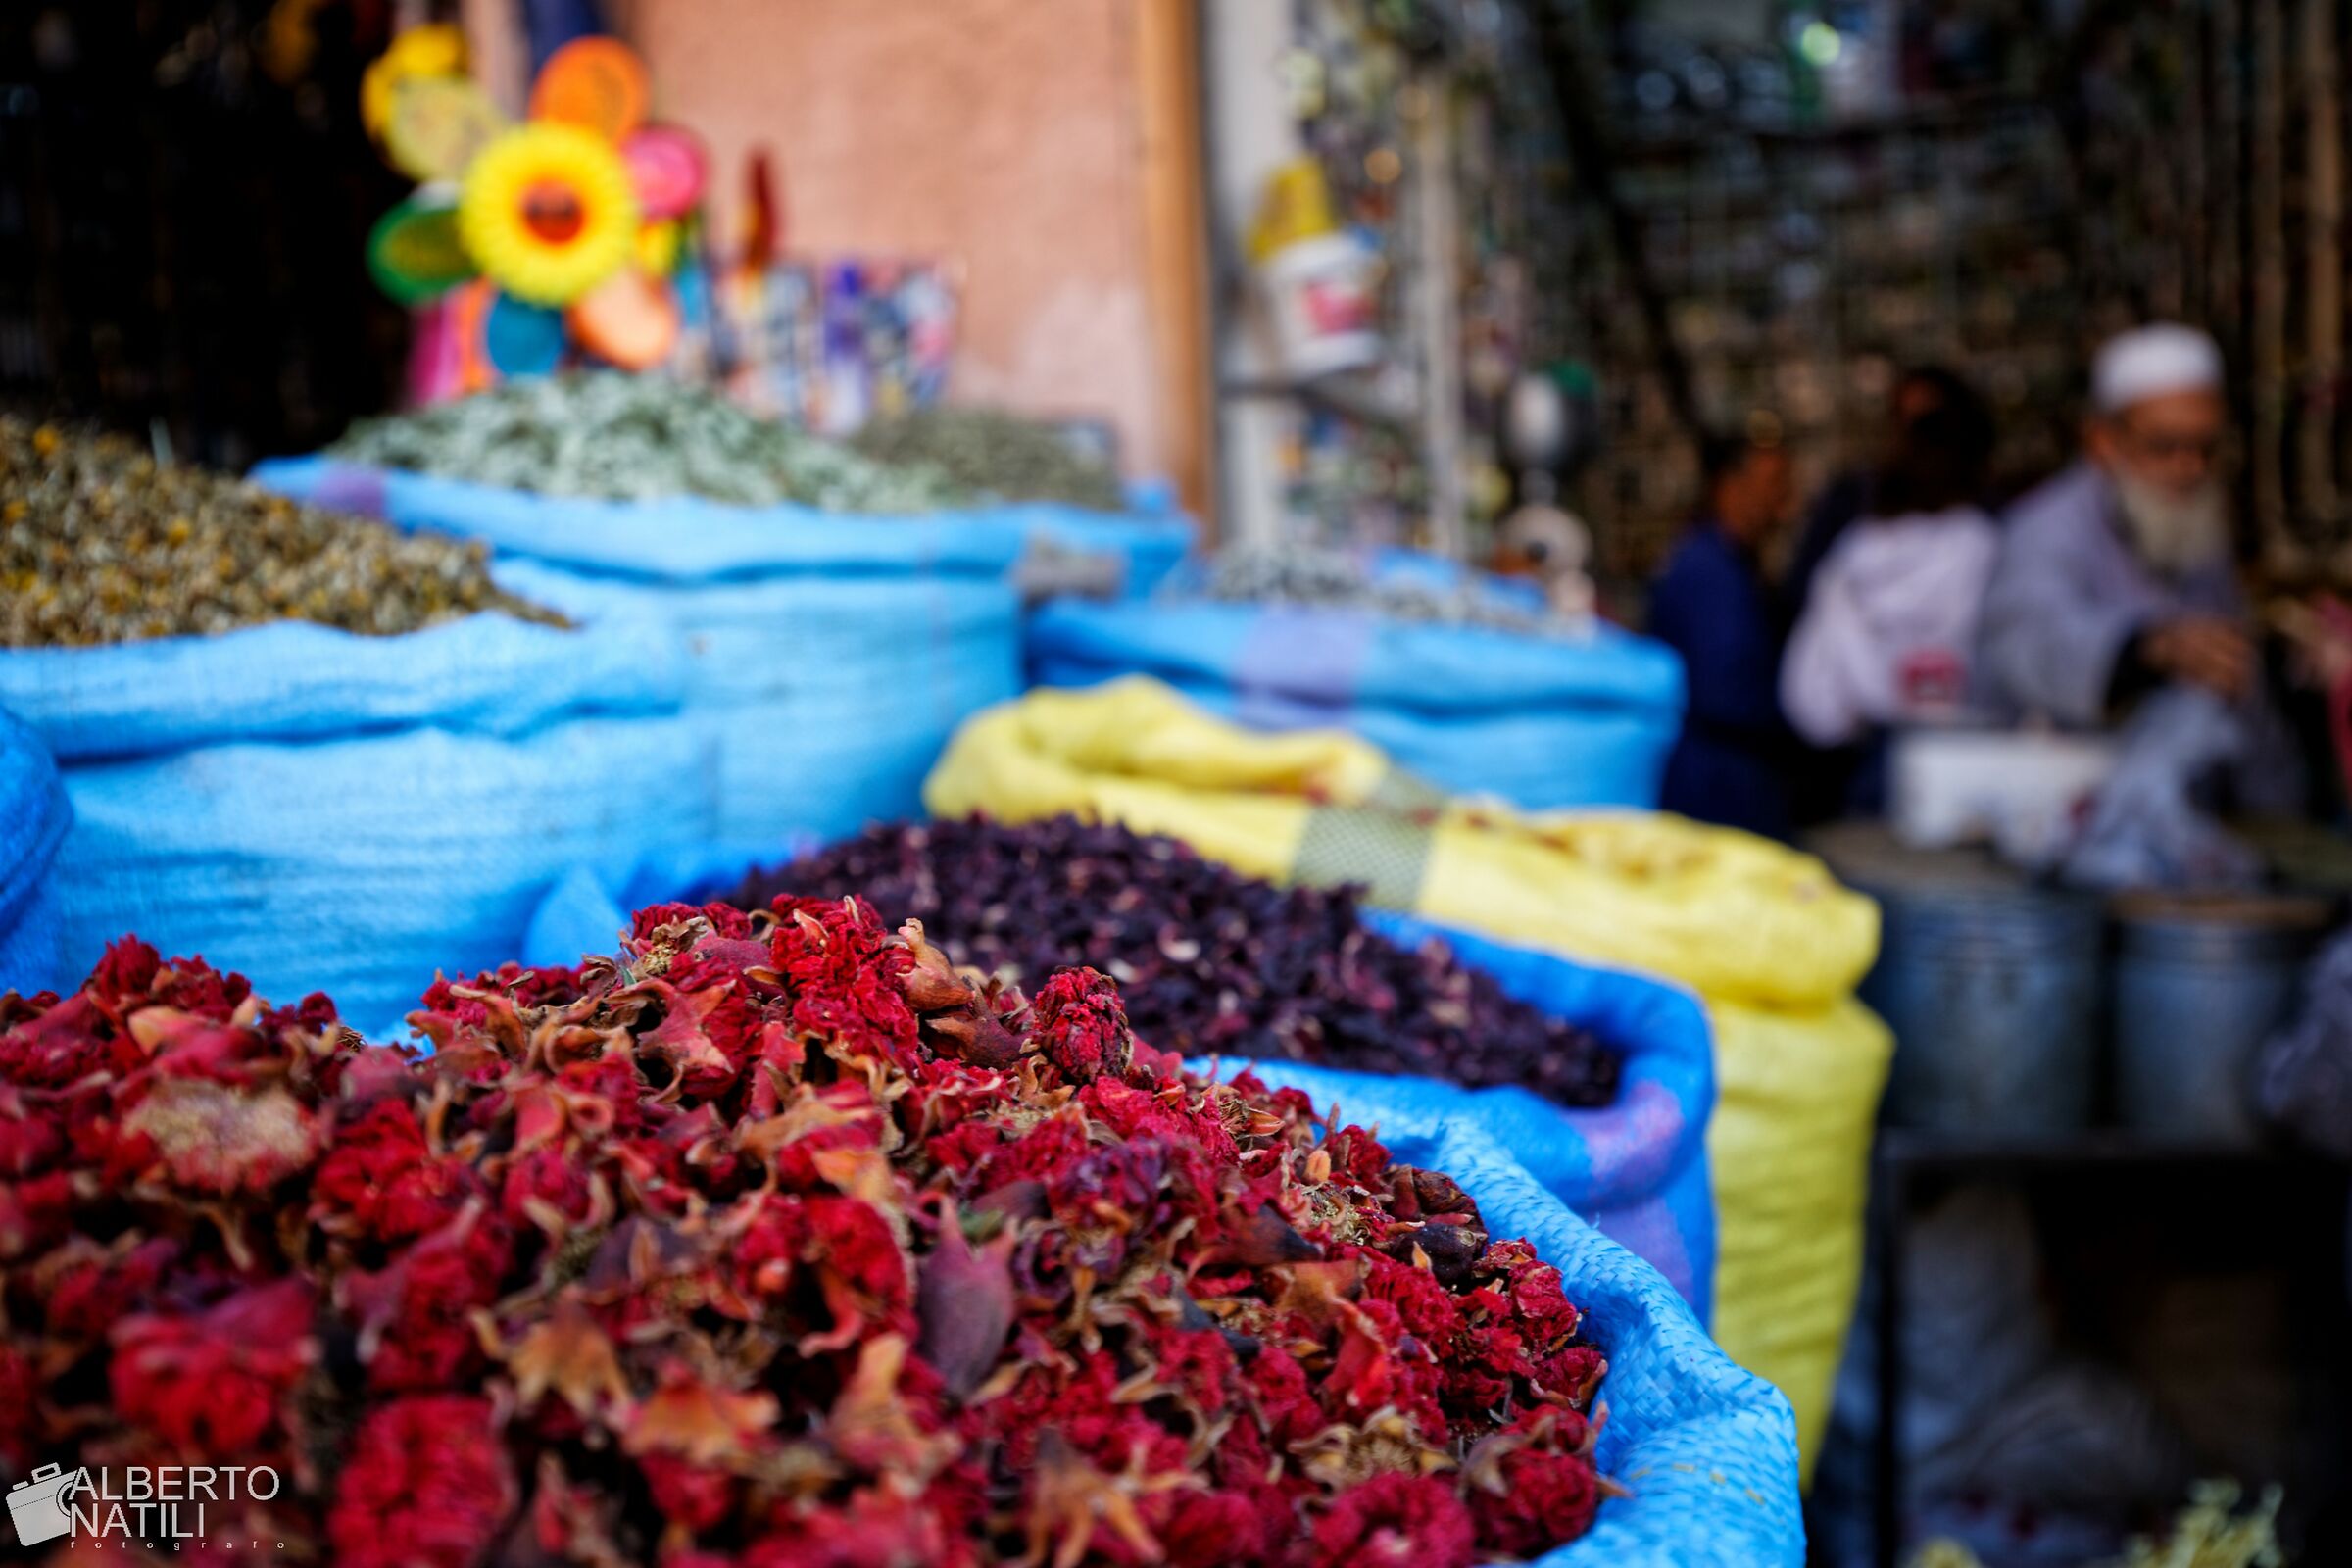 The spice seller, Marrakech...